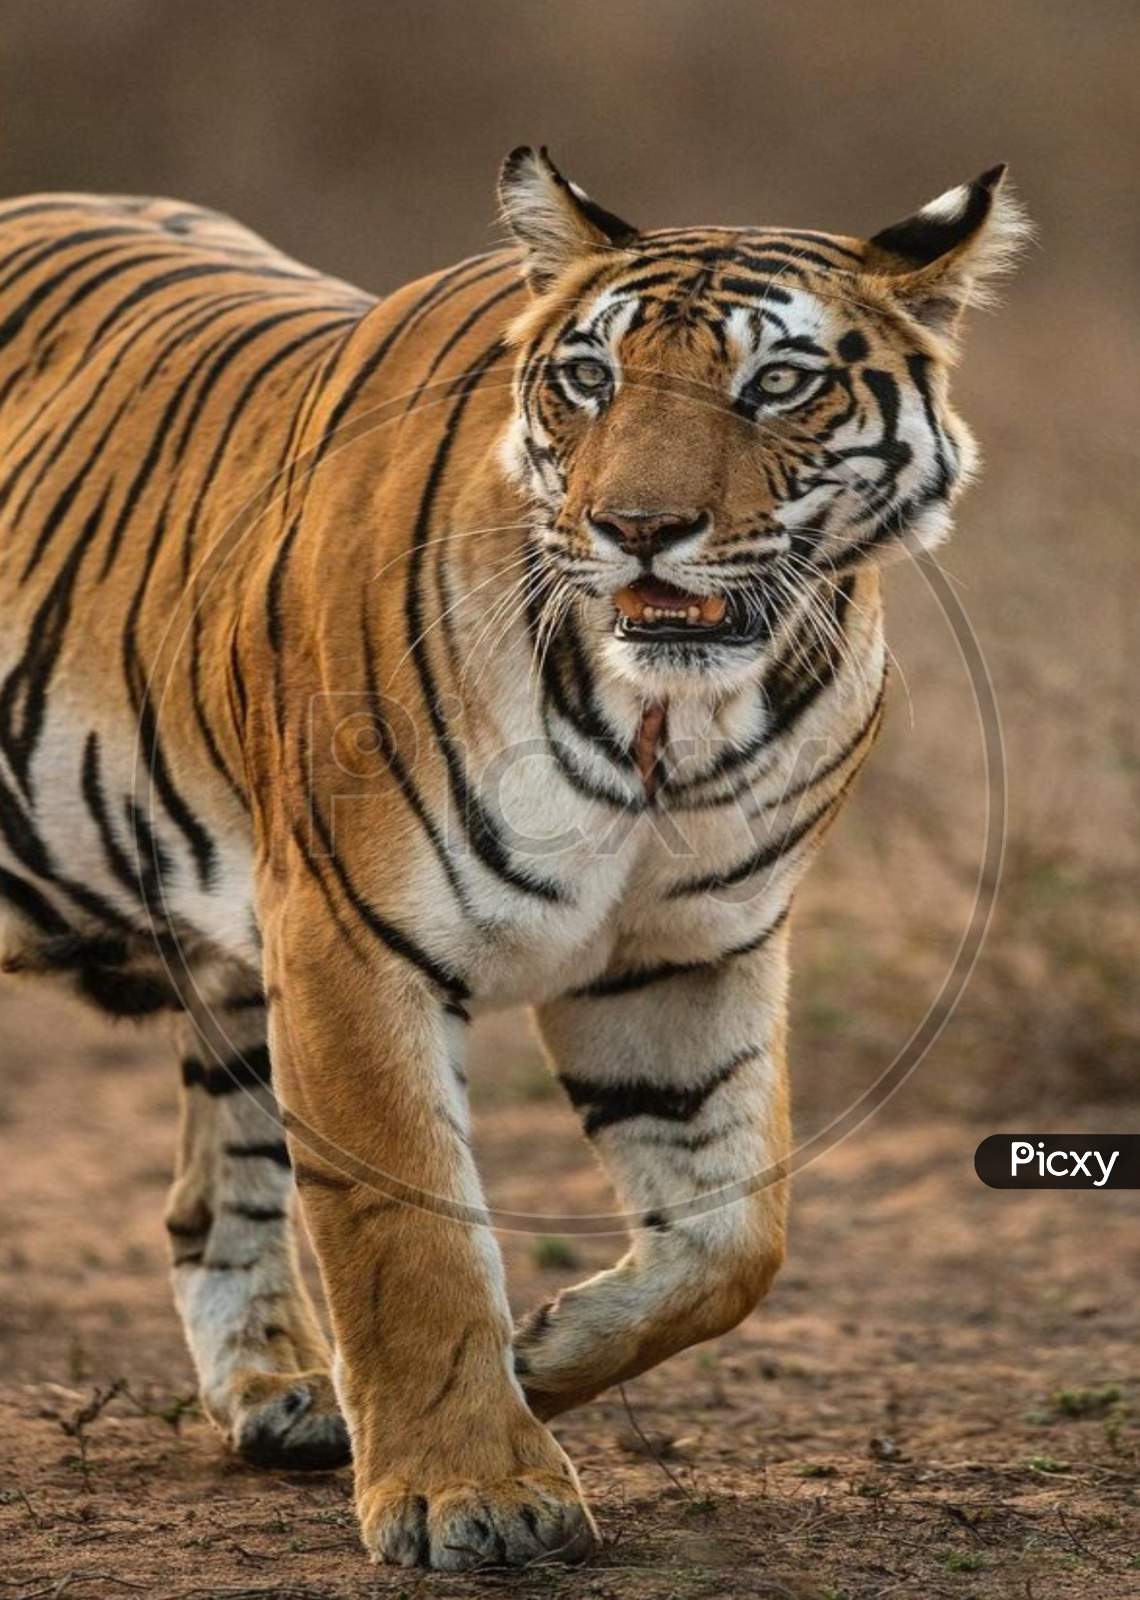 Tiger 🐅 Siberian tiger